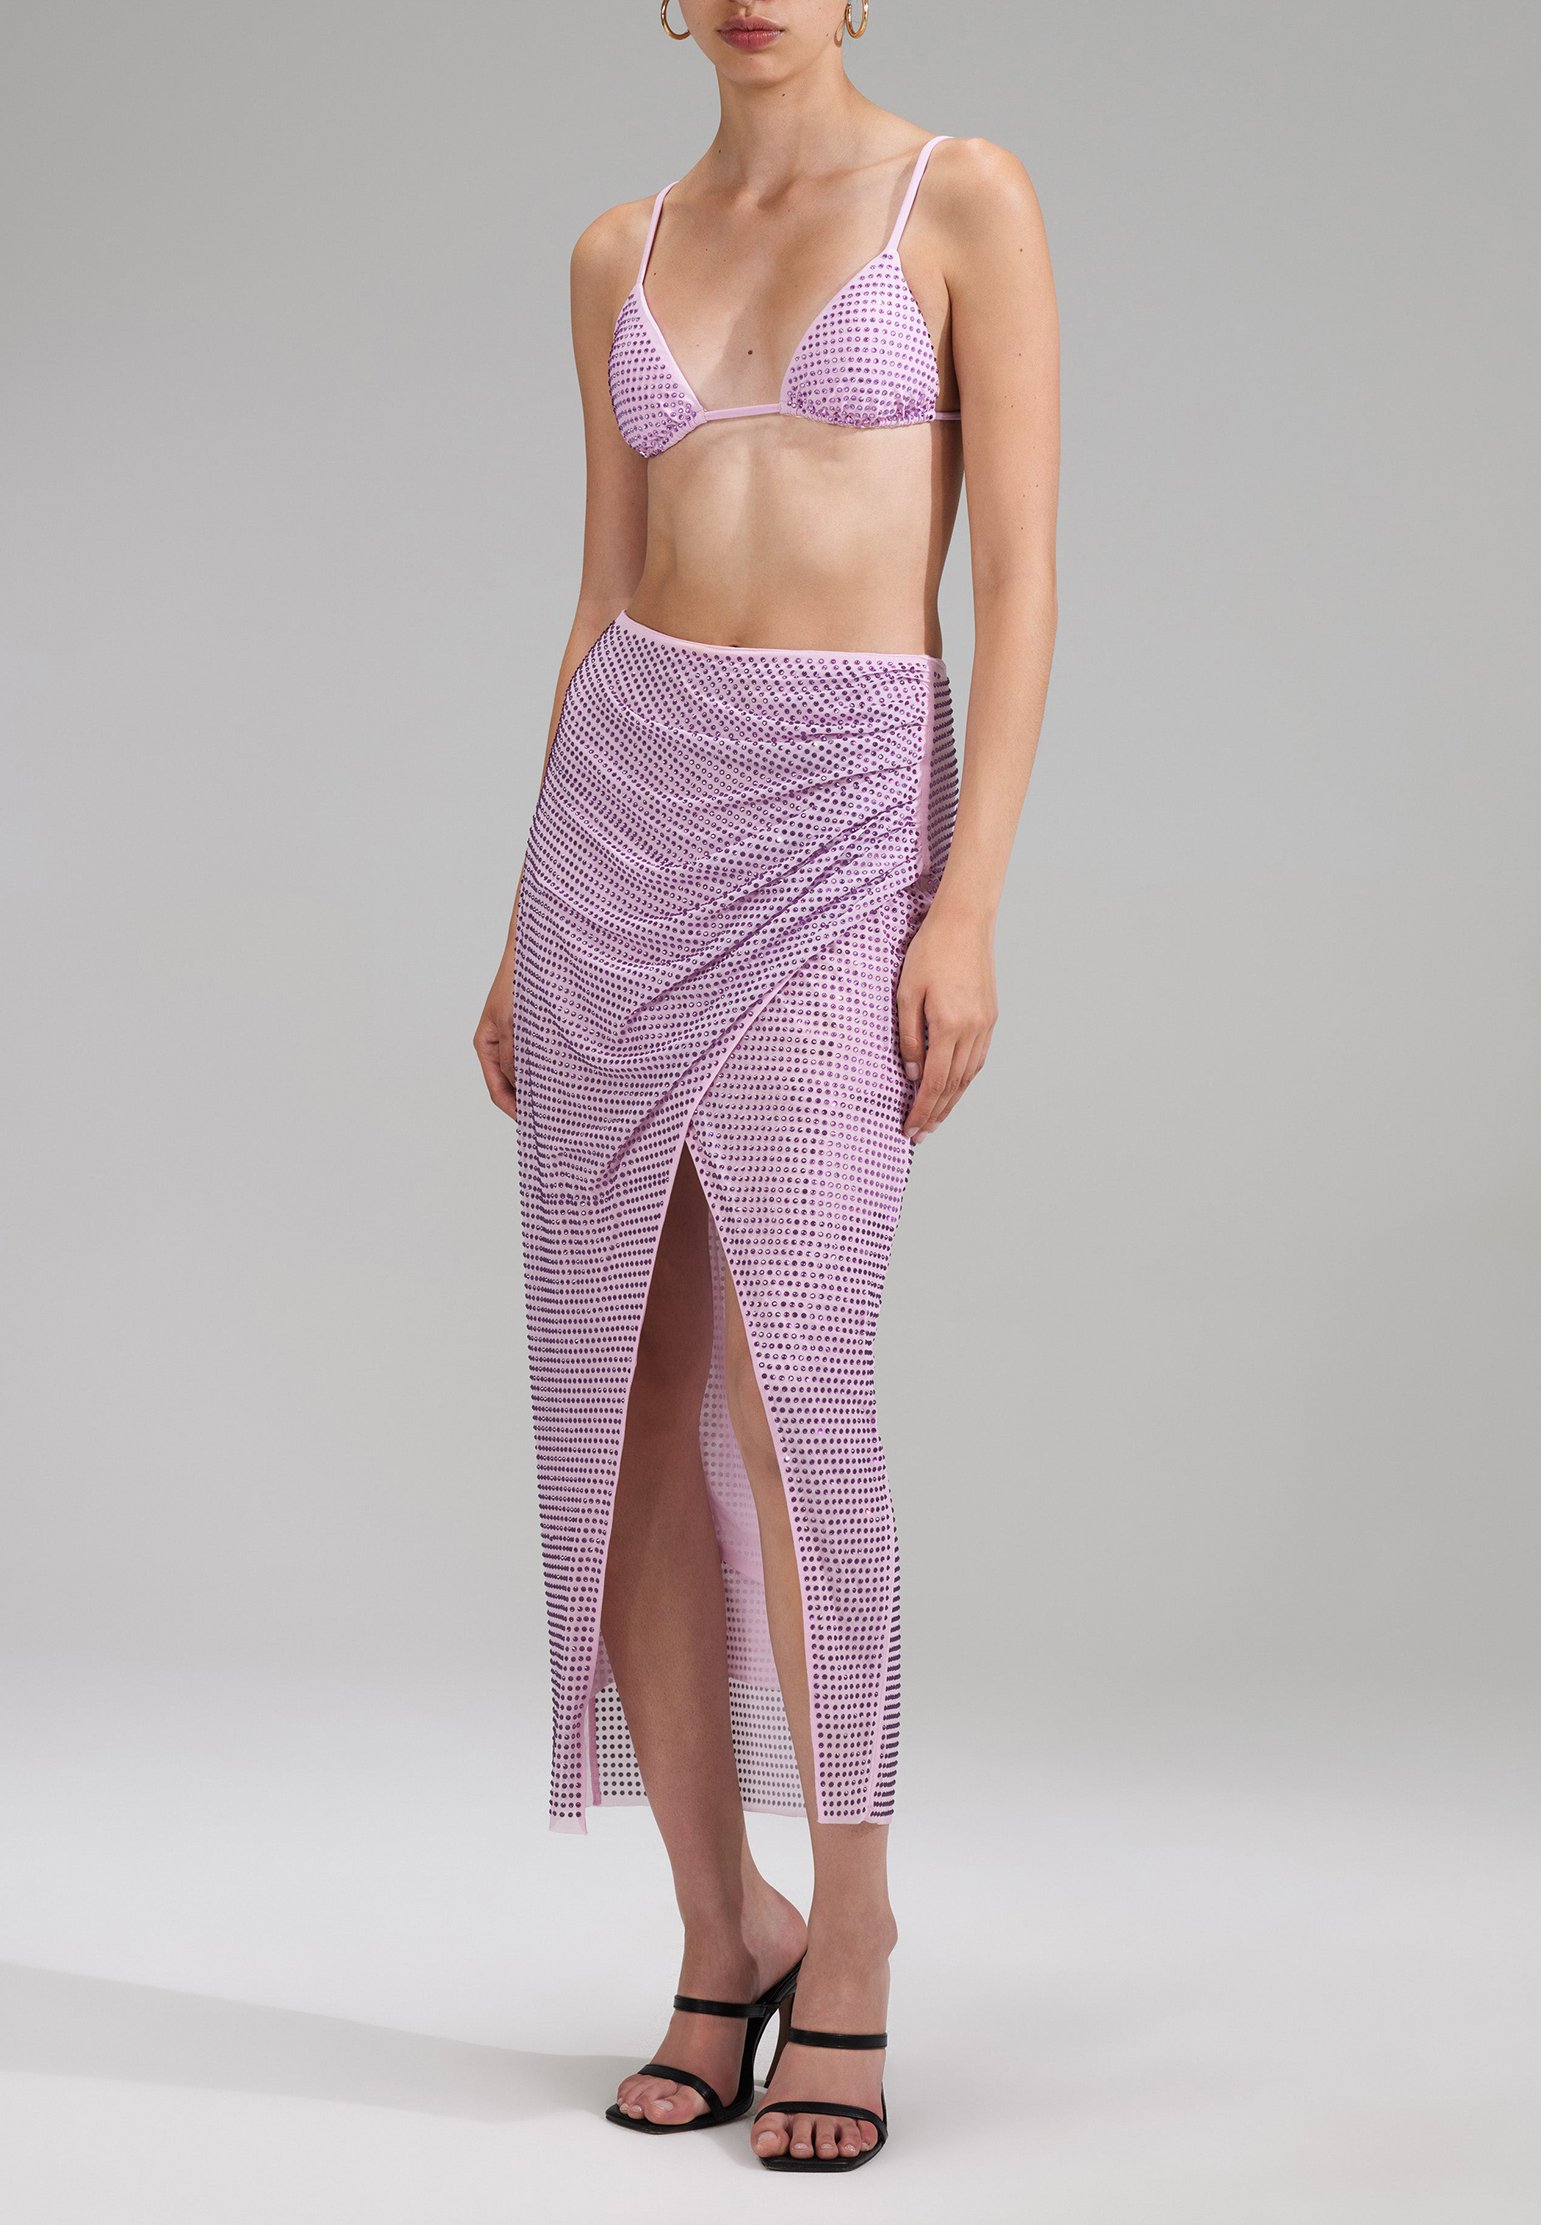 Bikini top SELF-PORTRAIT Color: lilac (Code: 2243) in online store Allure